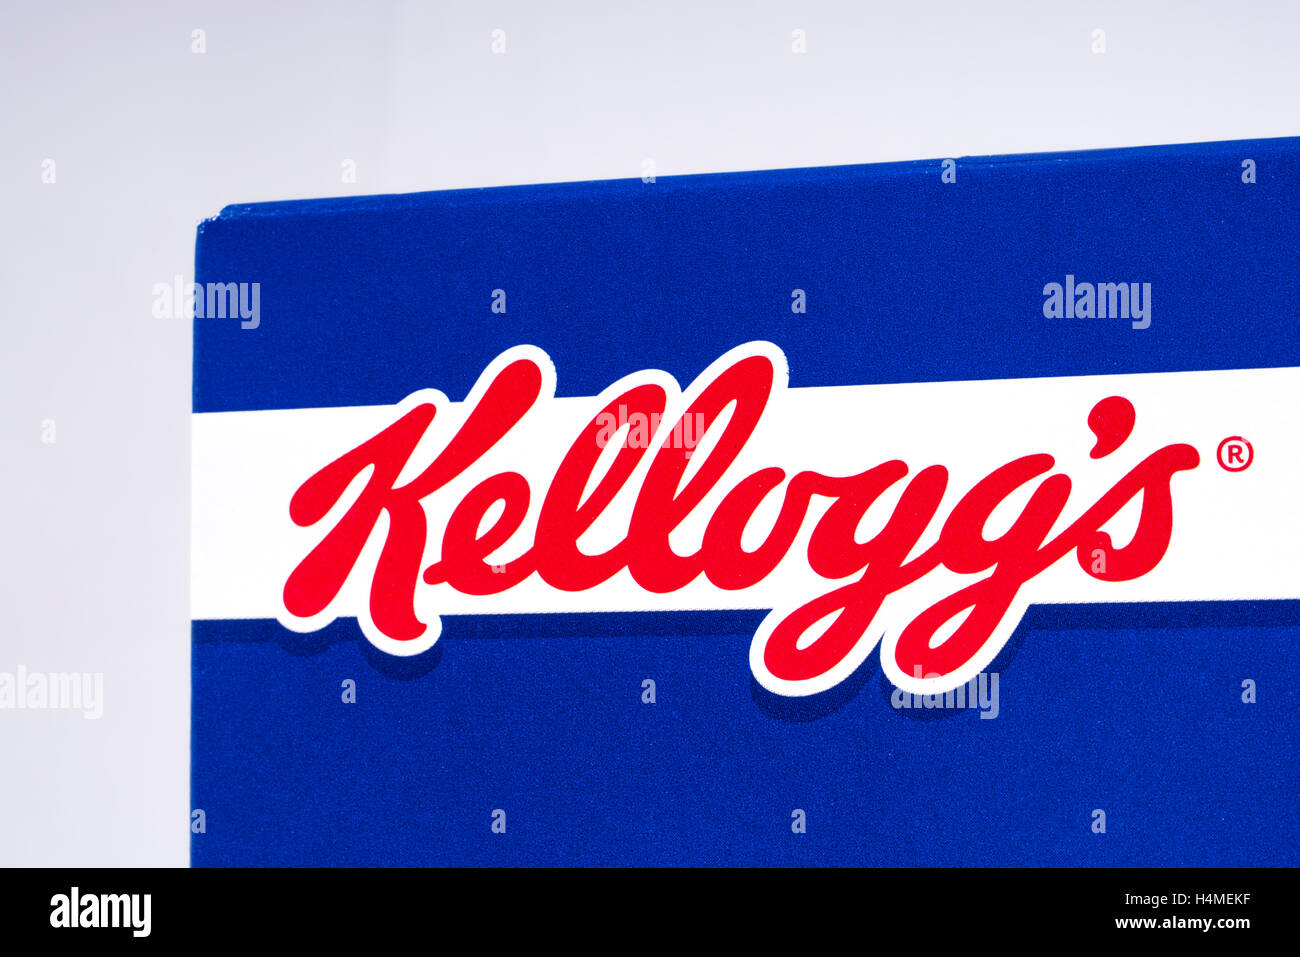 Londres, Royaume-Uni - 13 octobre 2016 : un gros plan de l'Kelloggs logo sur un paquet de Frosties, le 13 octobre 2016. Banque D'Images